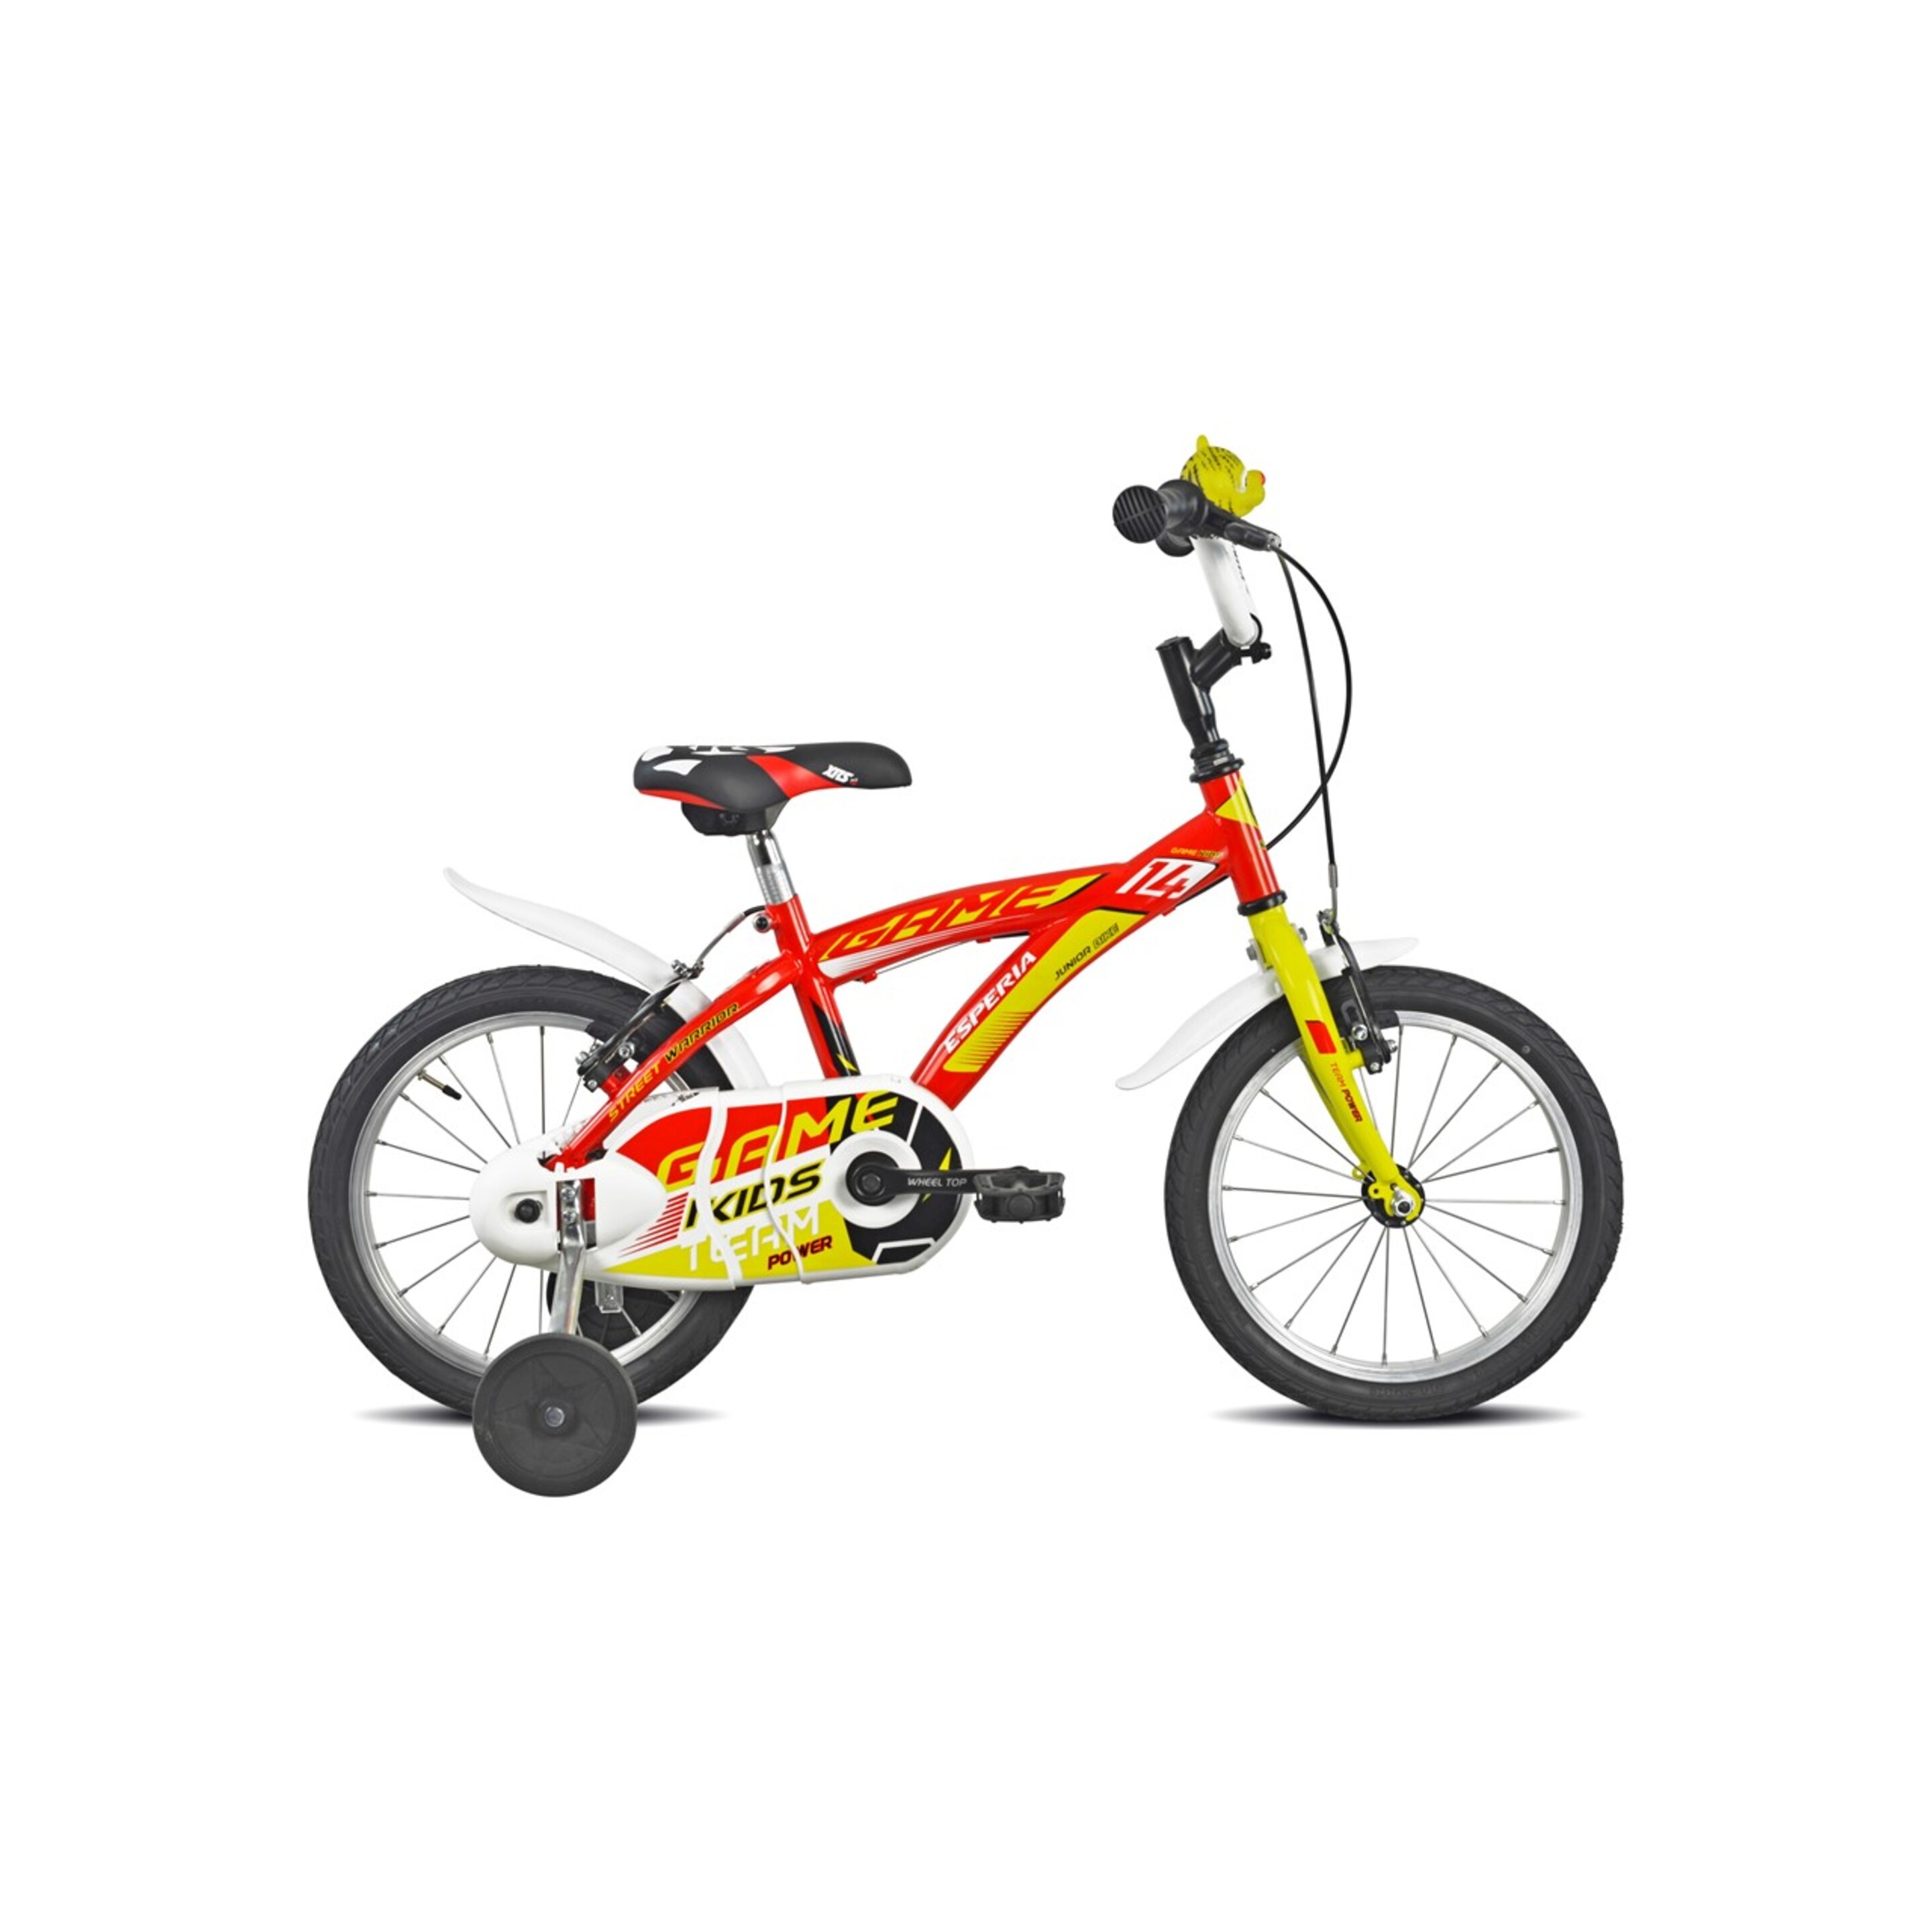 Bicicleta Infantil Game Boy 9700 Esperia - Vermelho - 9700 Game Boy Crianças bicicleta 14 "Esperia 1V Red | Sport Zone MKP